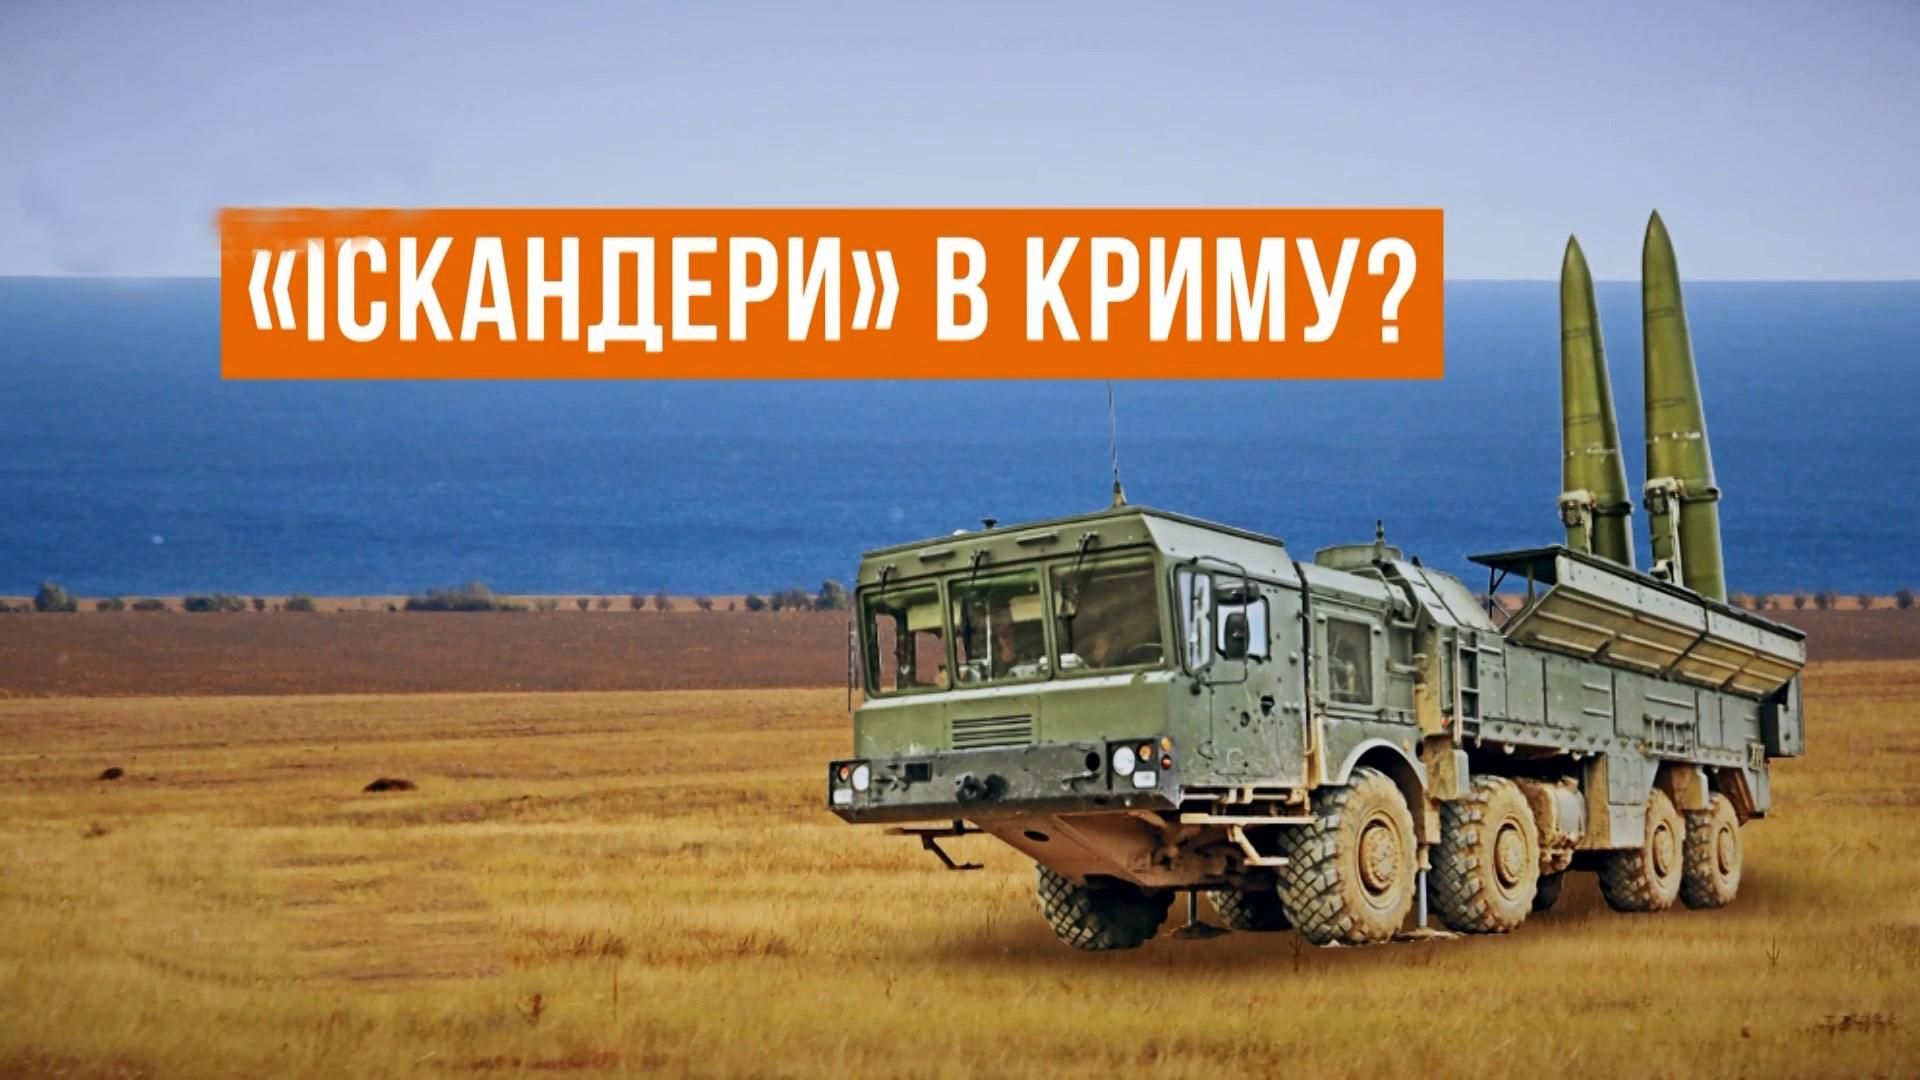 "Путін готується до війни": кому загрожують потужні ракетні комплекси у Криму